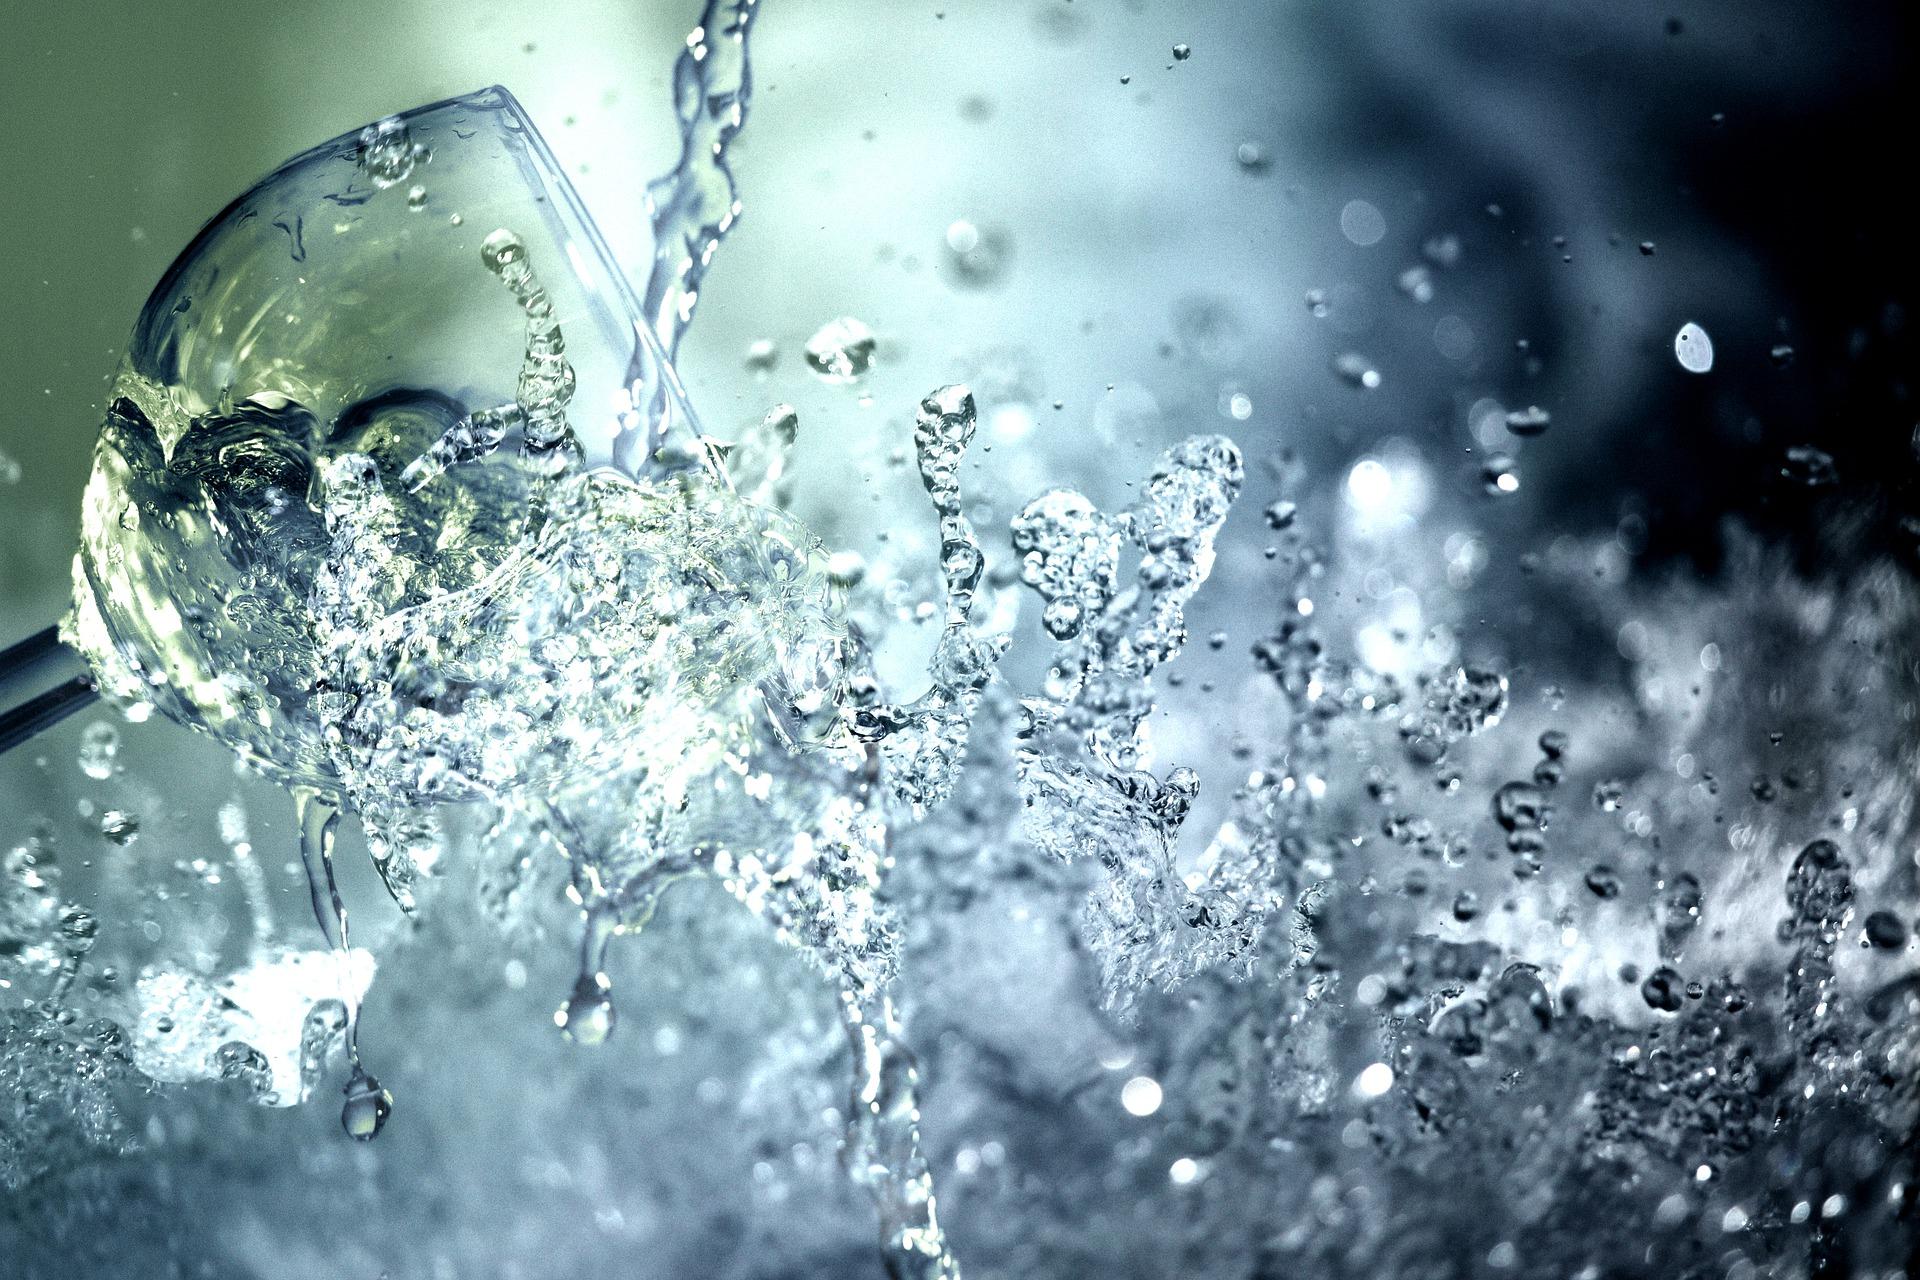 L'acqua alcalina porta benefici alla salute? - Acqua Alma